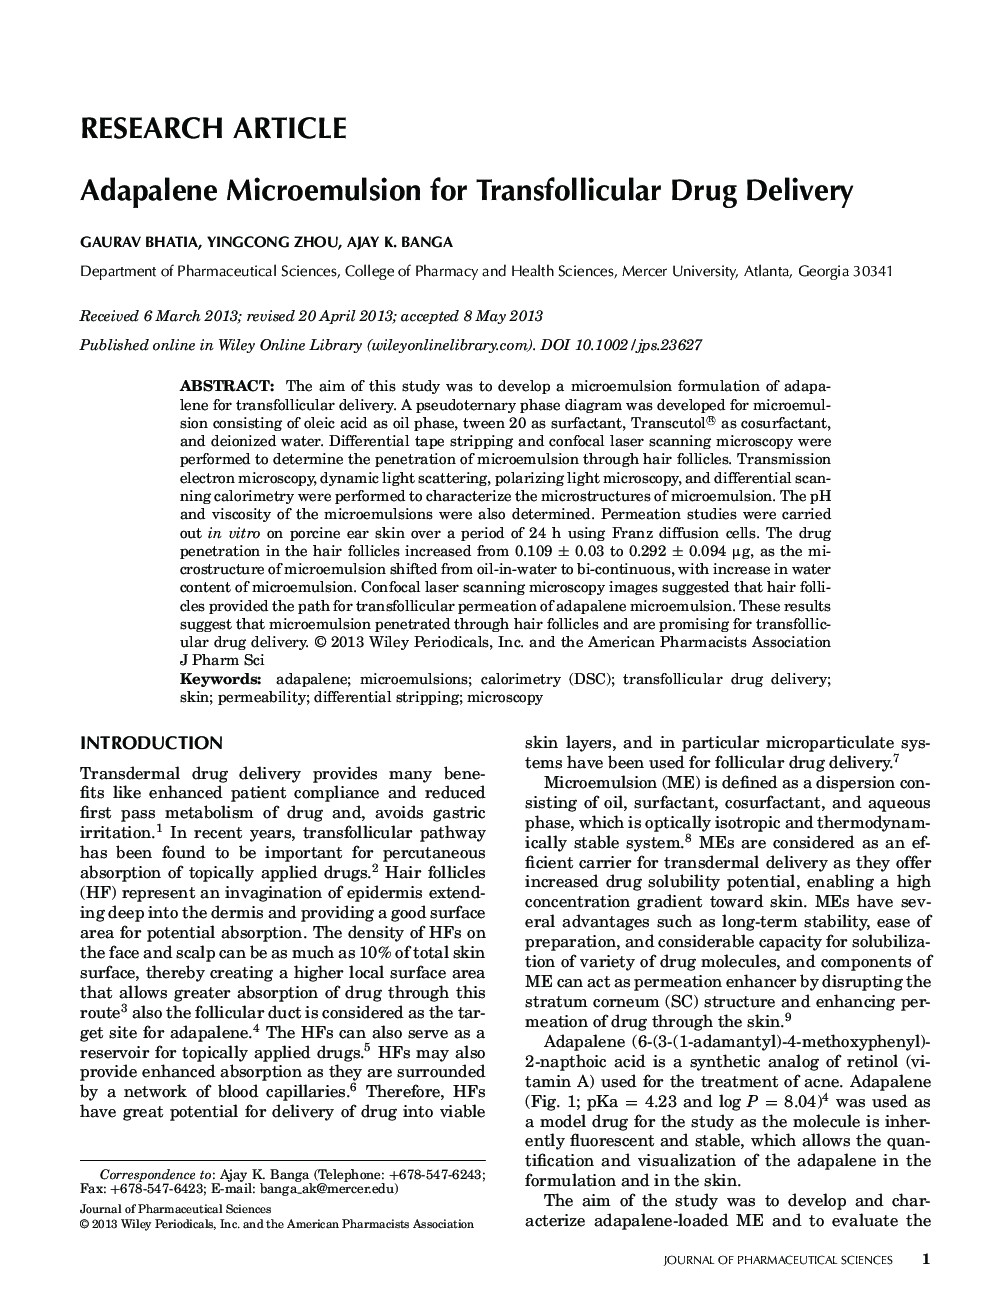 میکرومولسیون آداپالن برای تحویل داروهای ترانسفللیکولار 